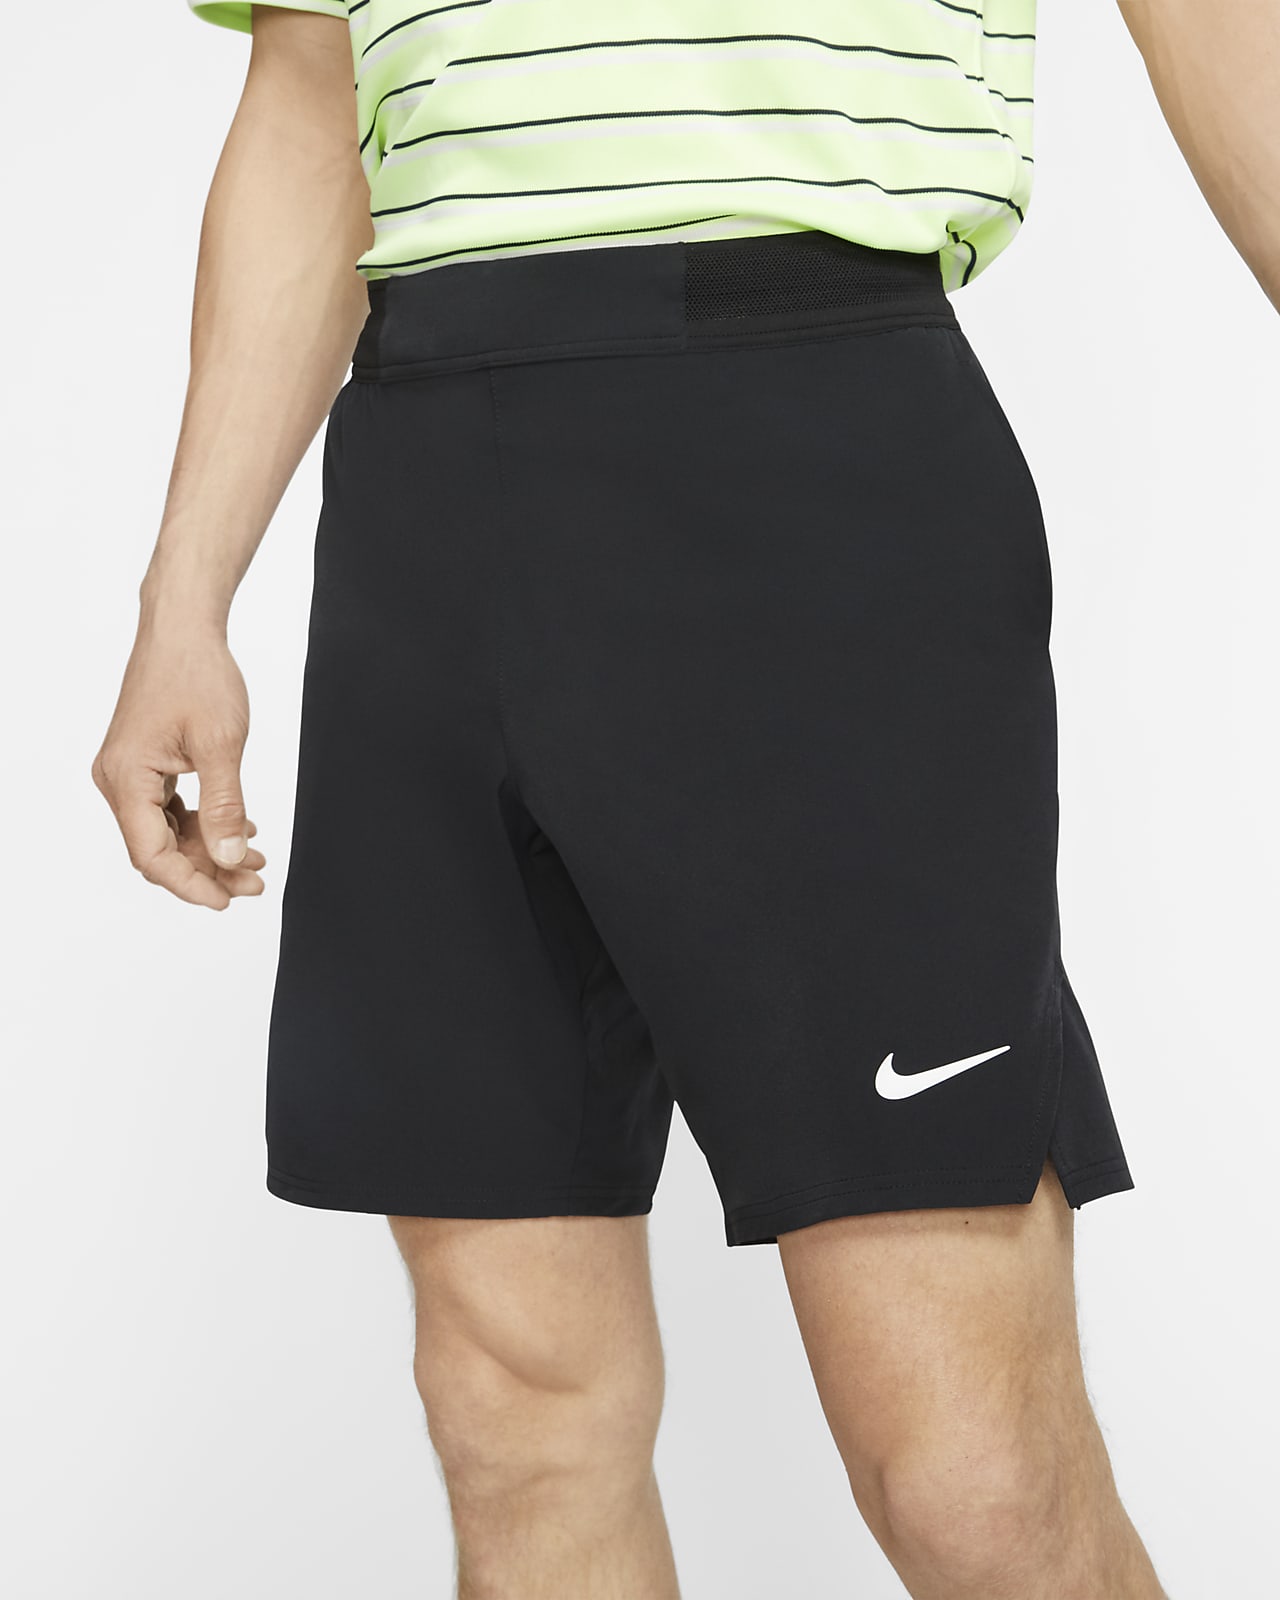 nike men's court flex ace 9 tennis shorts